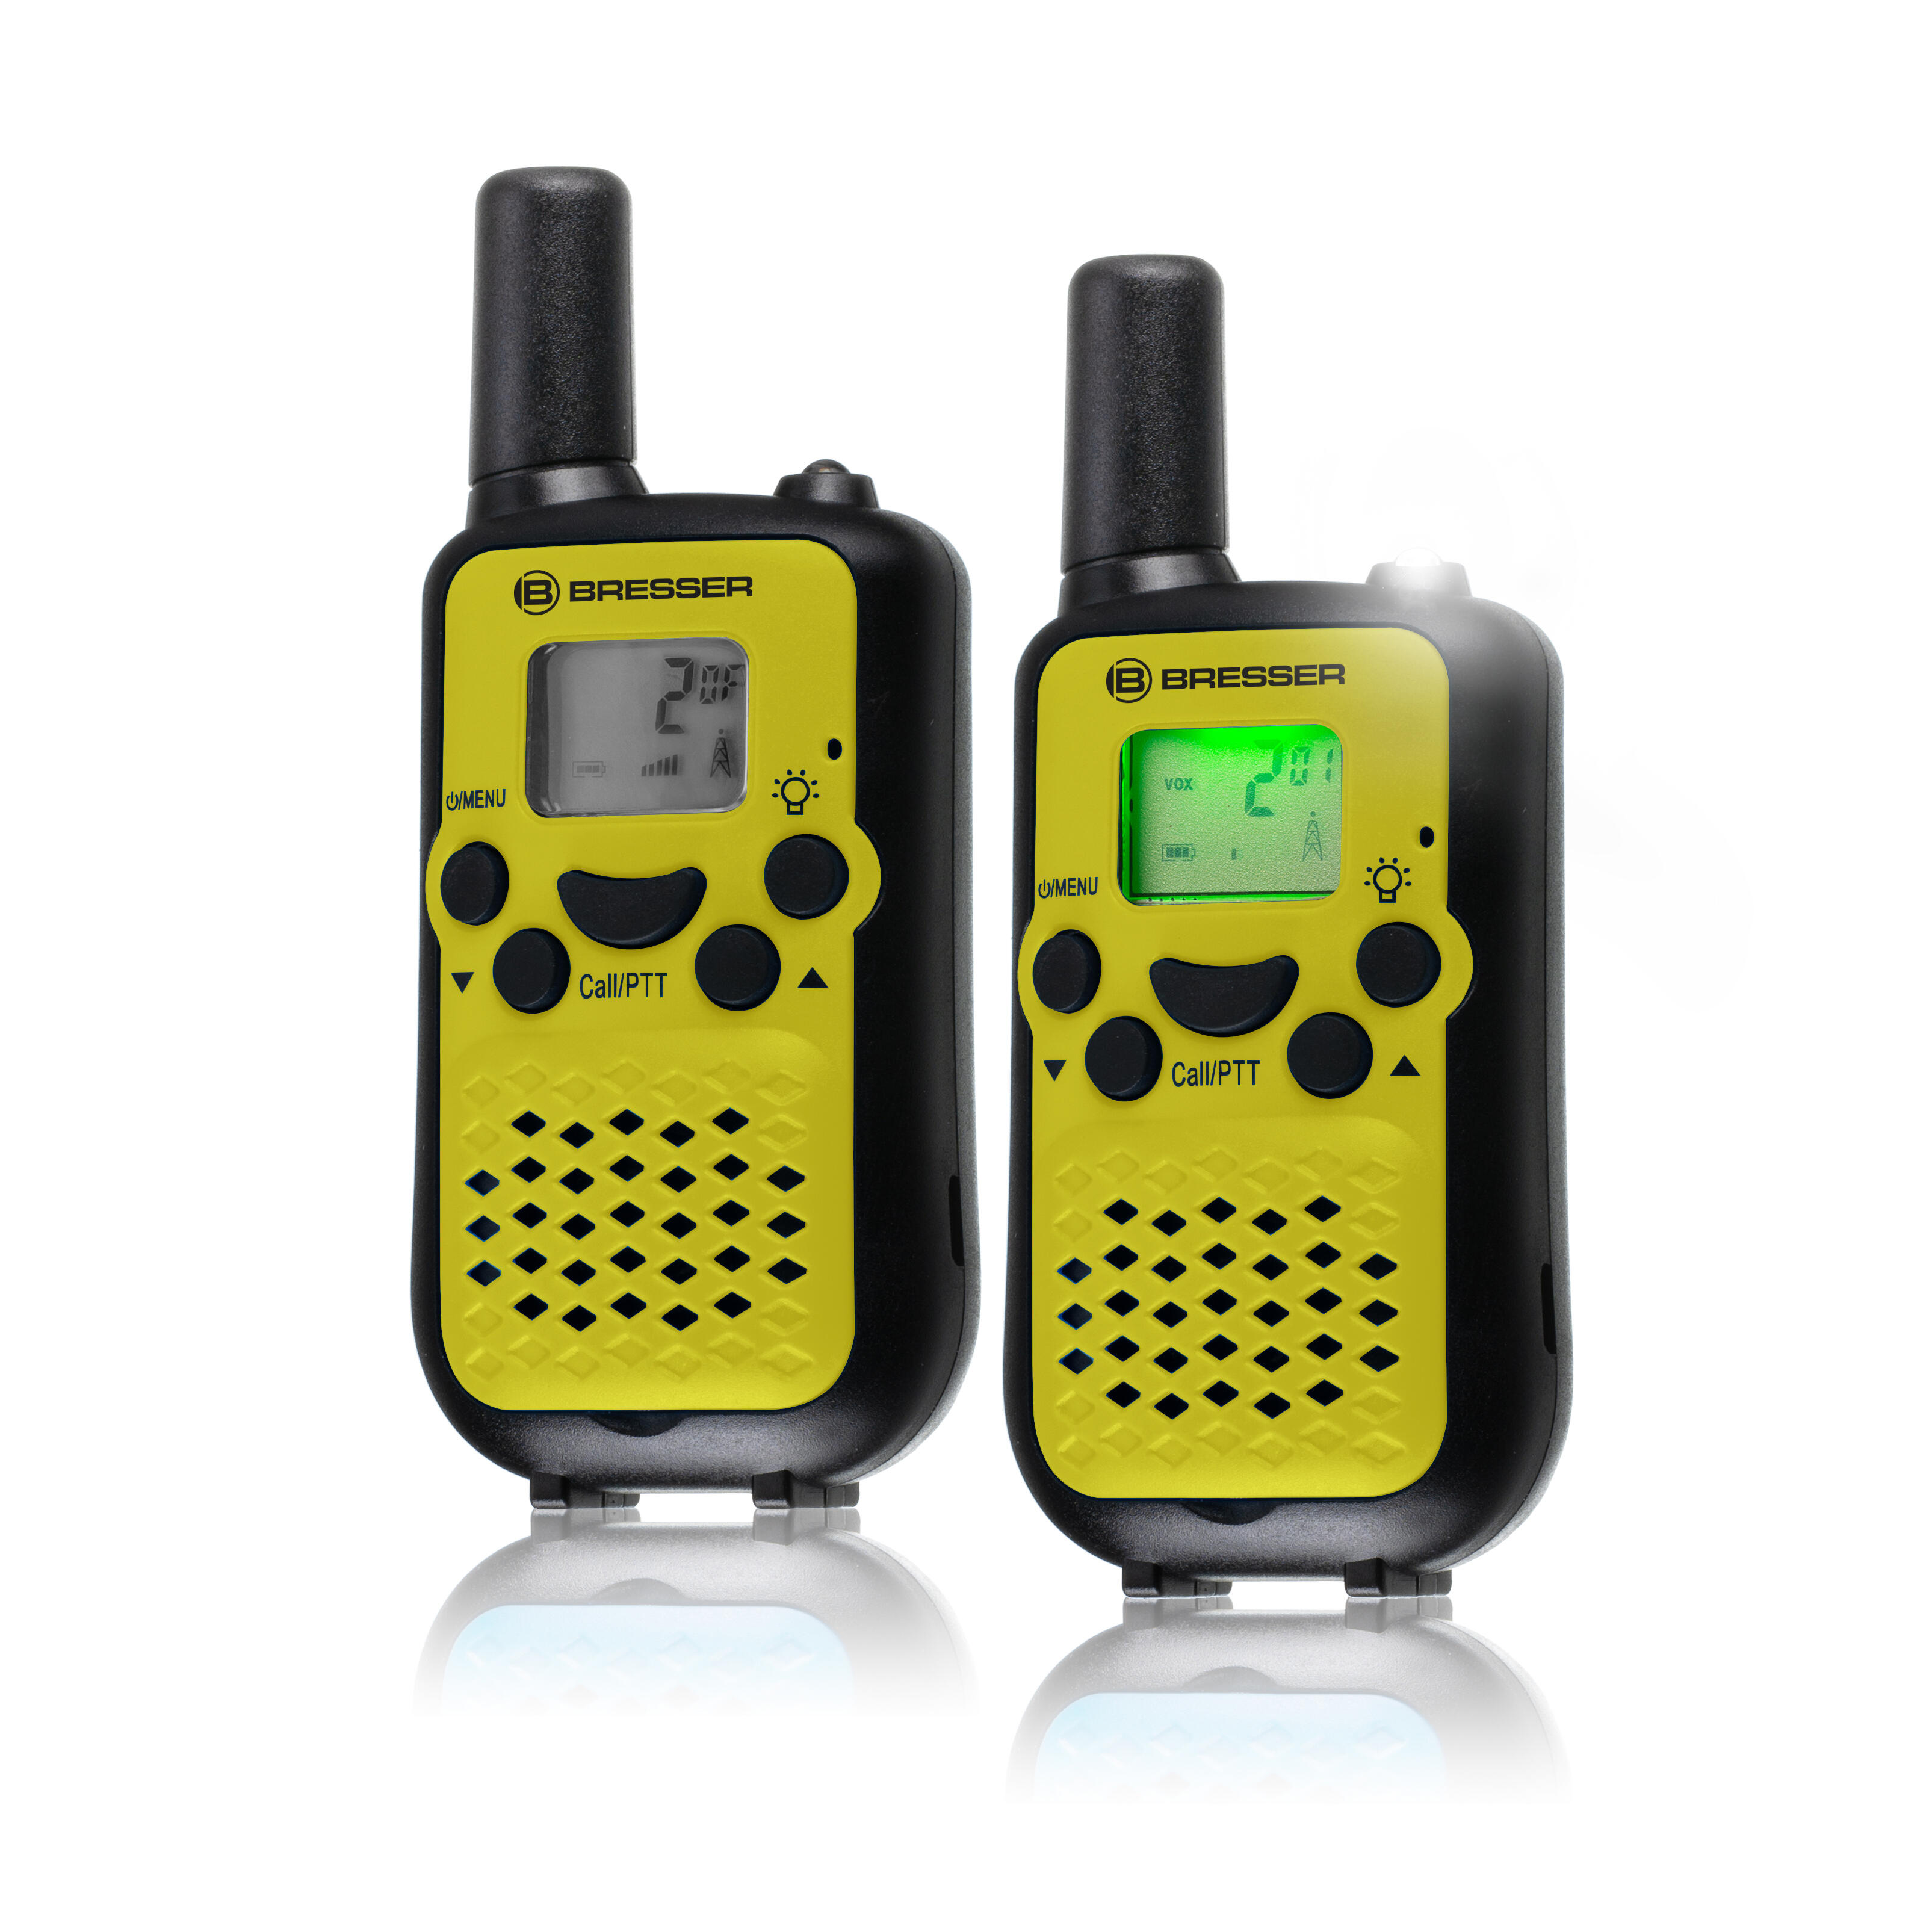 Oreillette pour talkie-walkie g10 midland as21k1